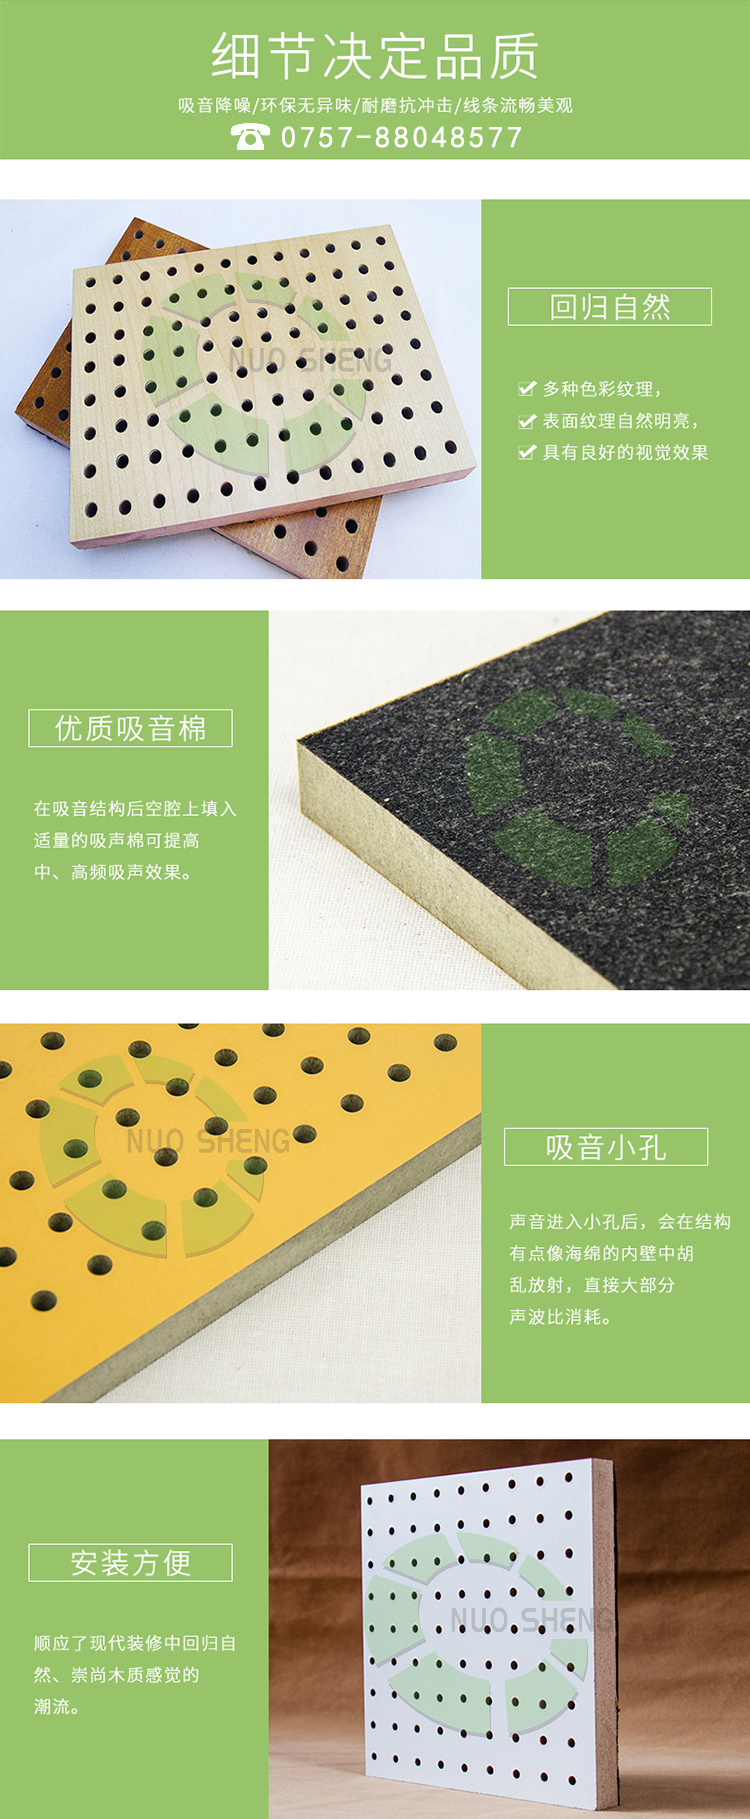 木质微孔吸音板产品细节